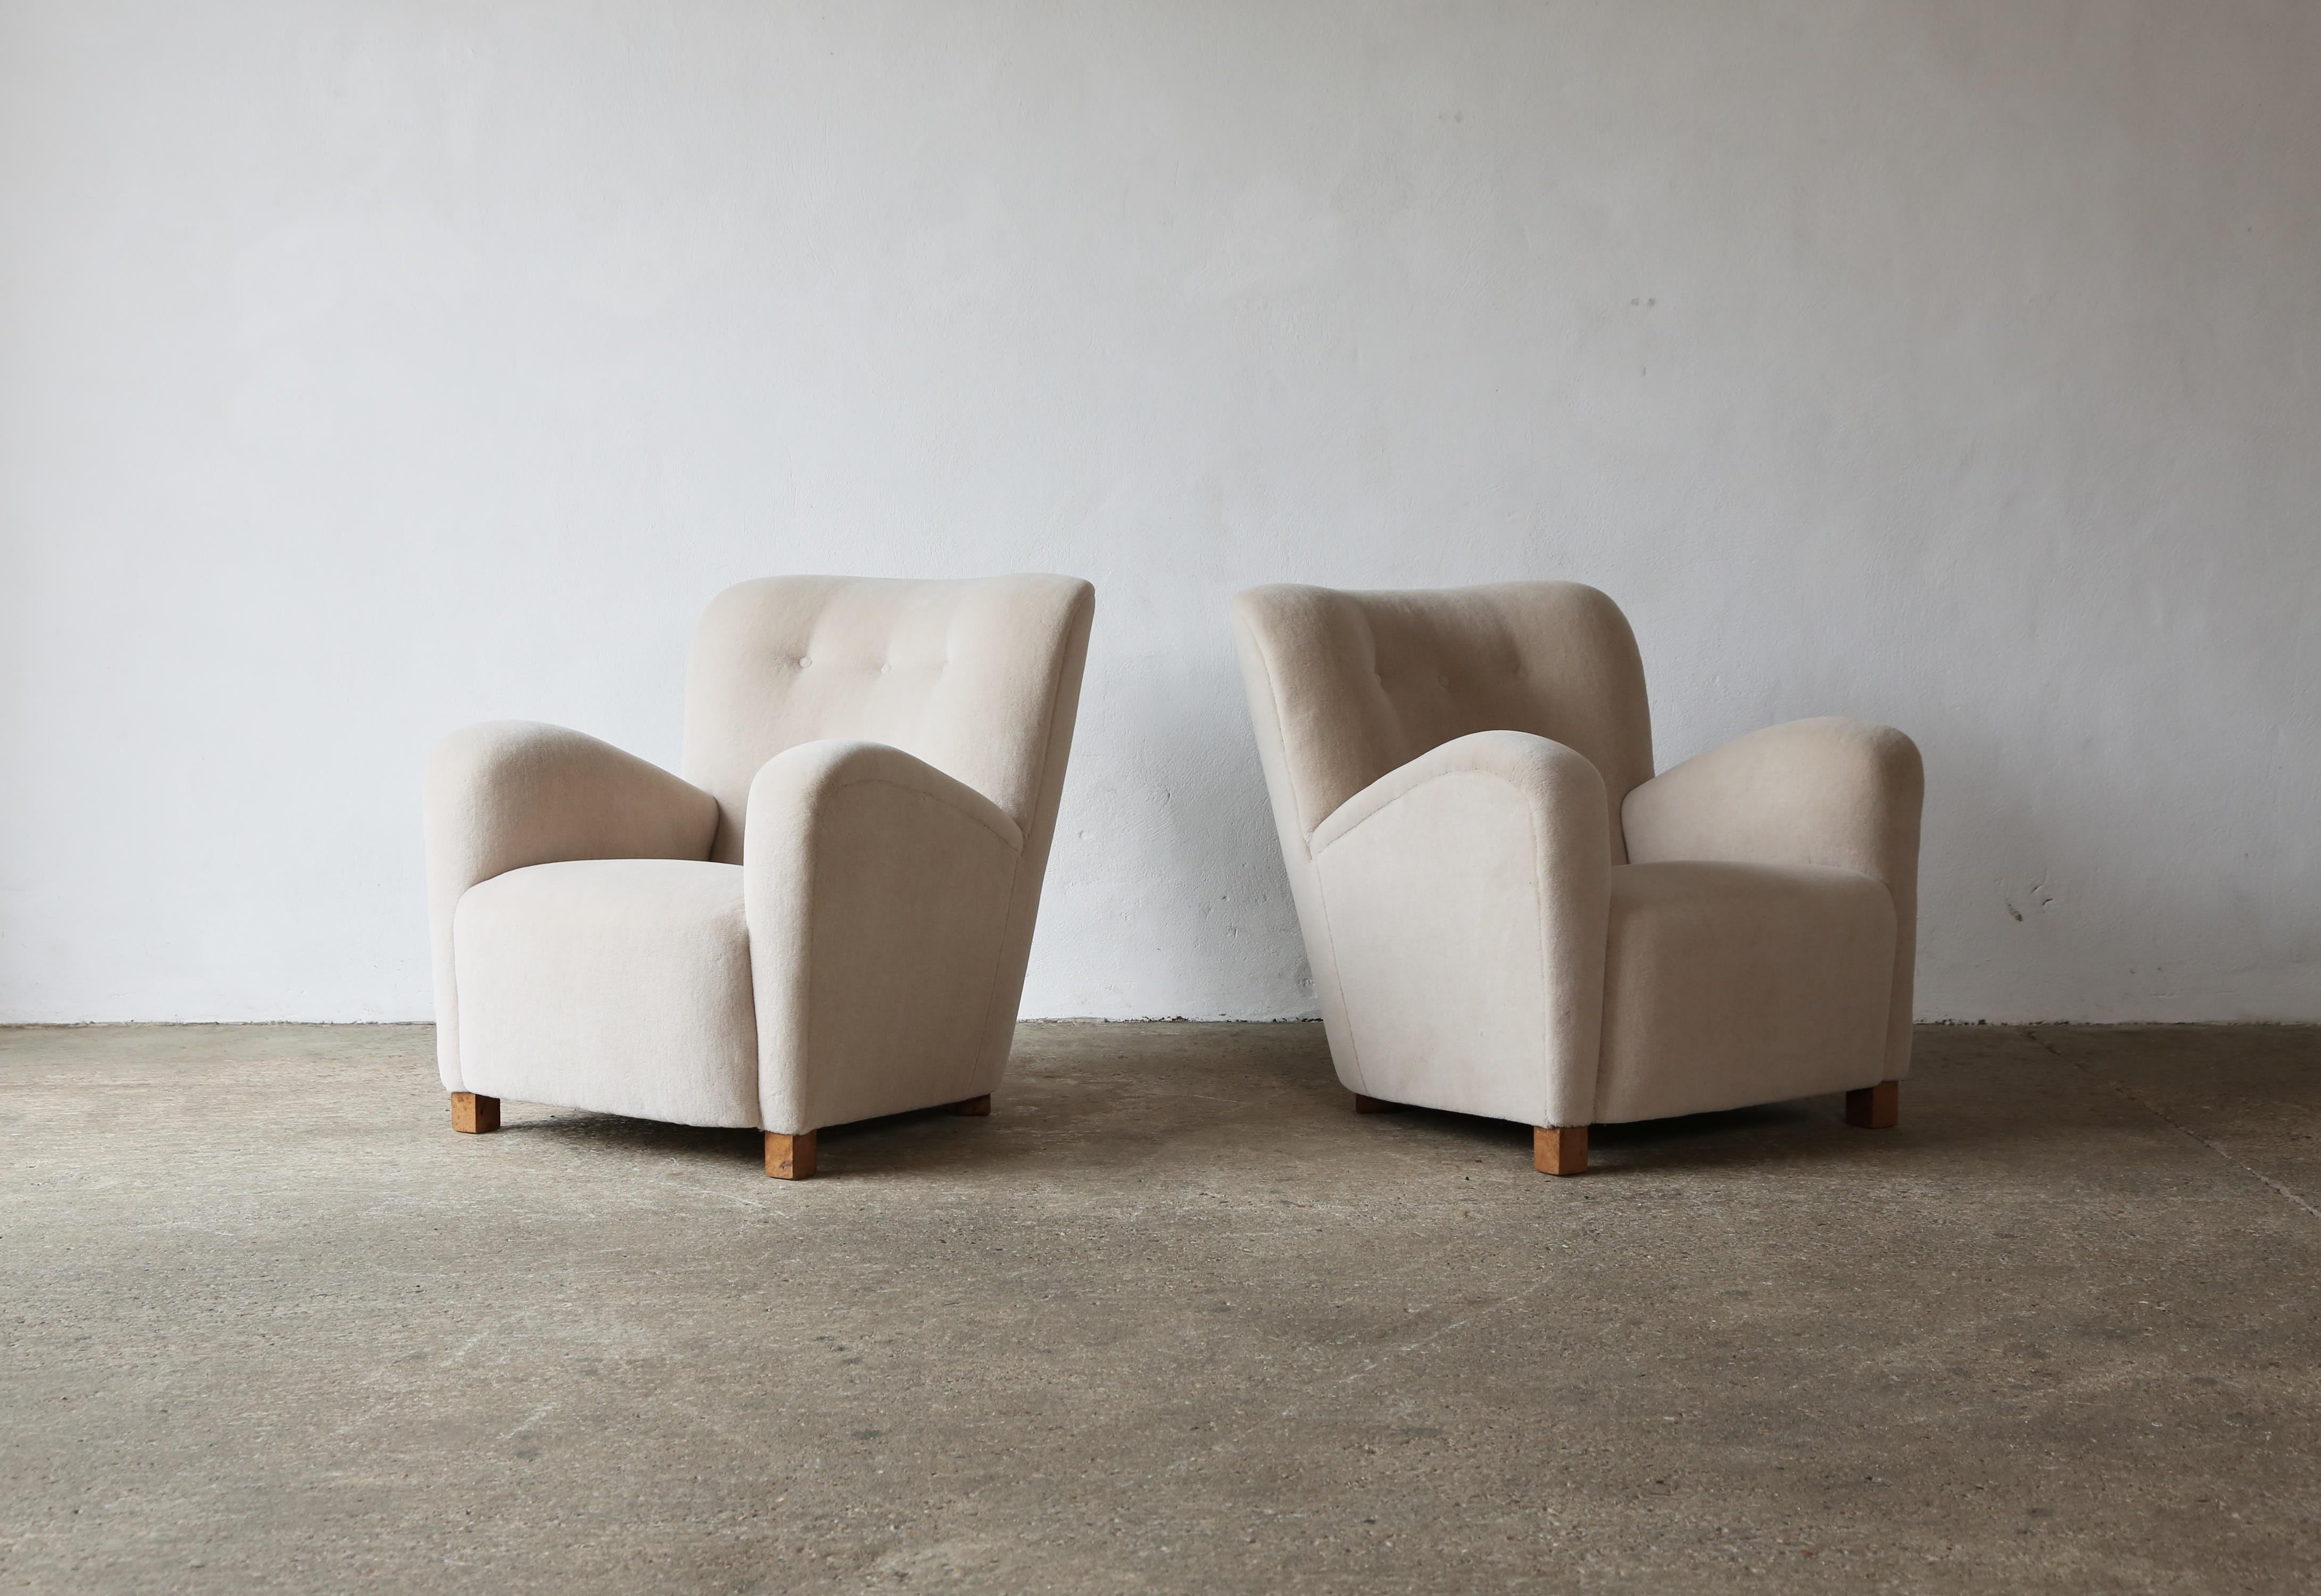 Très belle paire de fauteuils confortables, Danemark, années 1940. Nouvellement revêtu d'une luxueuse laine d'alpaga de première qualité, douce et de couleur ivoire. Expédition rapide dans le monde entier.
  


